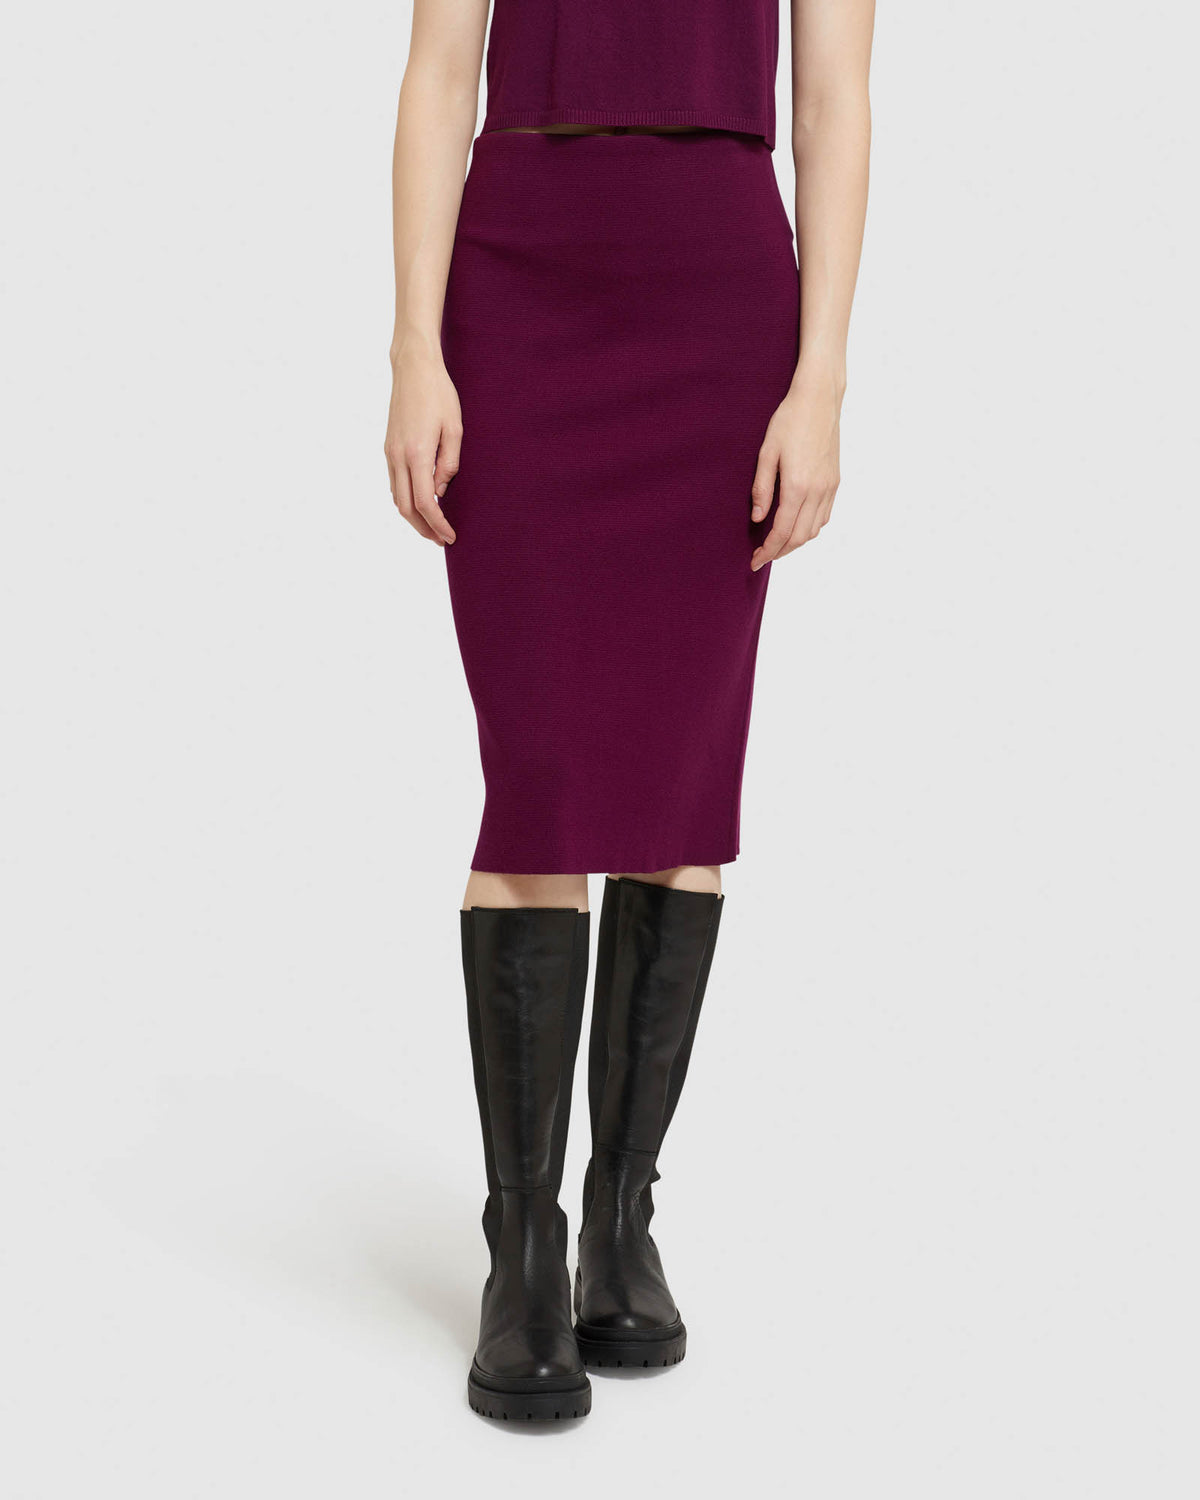 UMfun Skirts for Women, Pencil Skirt Sexy Slit Half Body Dress, Womens High  Waist Casual Wrap Maxi Draped Skirt Purple XL - Walmart.com